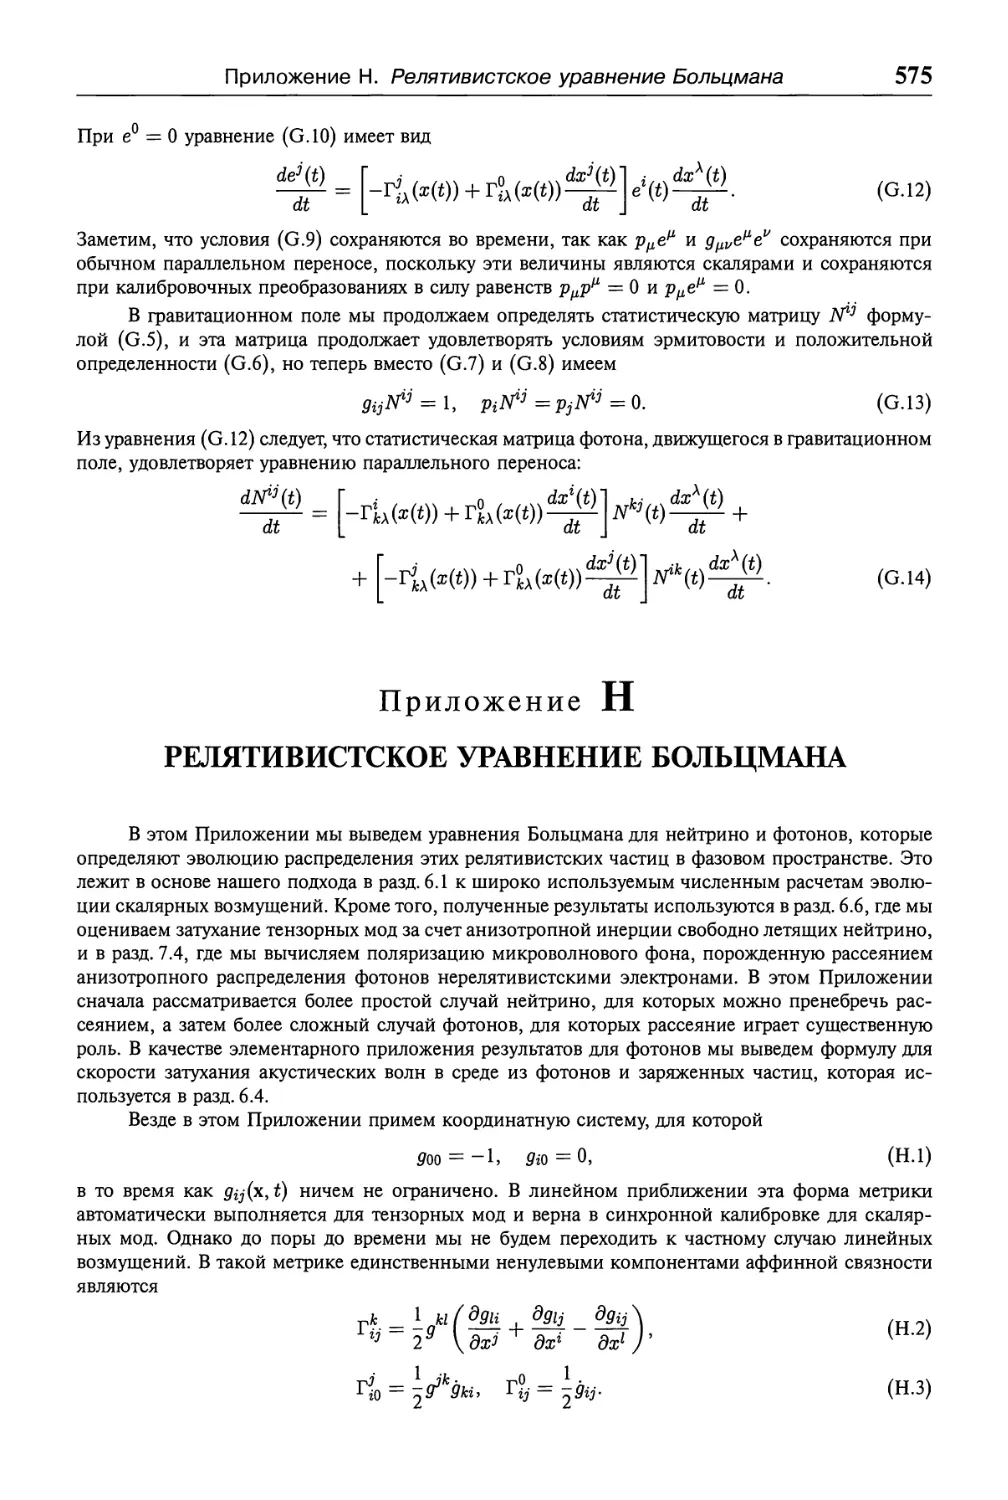 Приложение Н. Релятивистское уравнение Больцмана